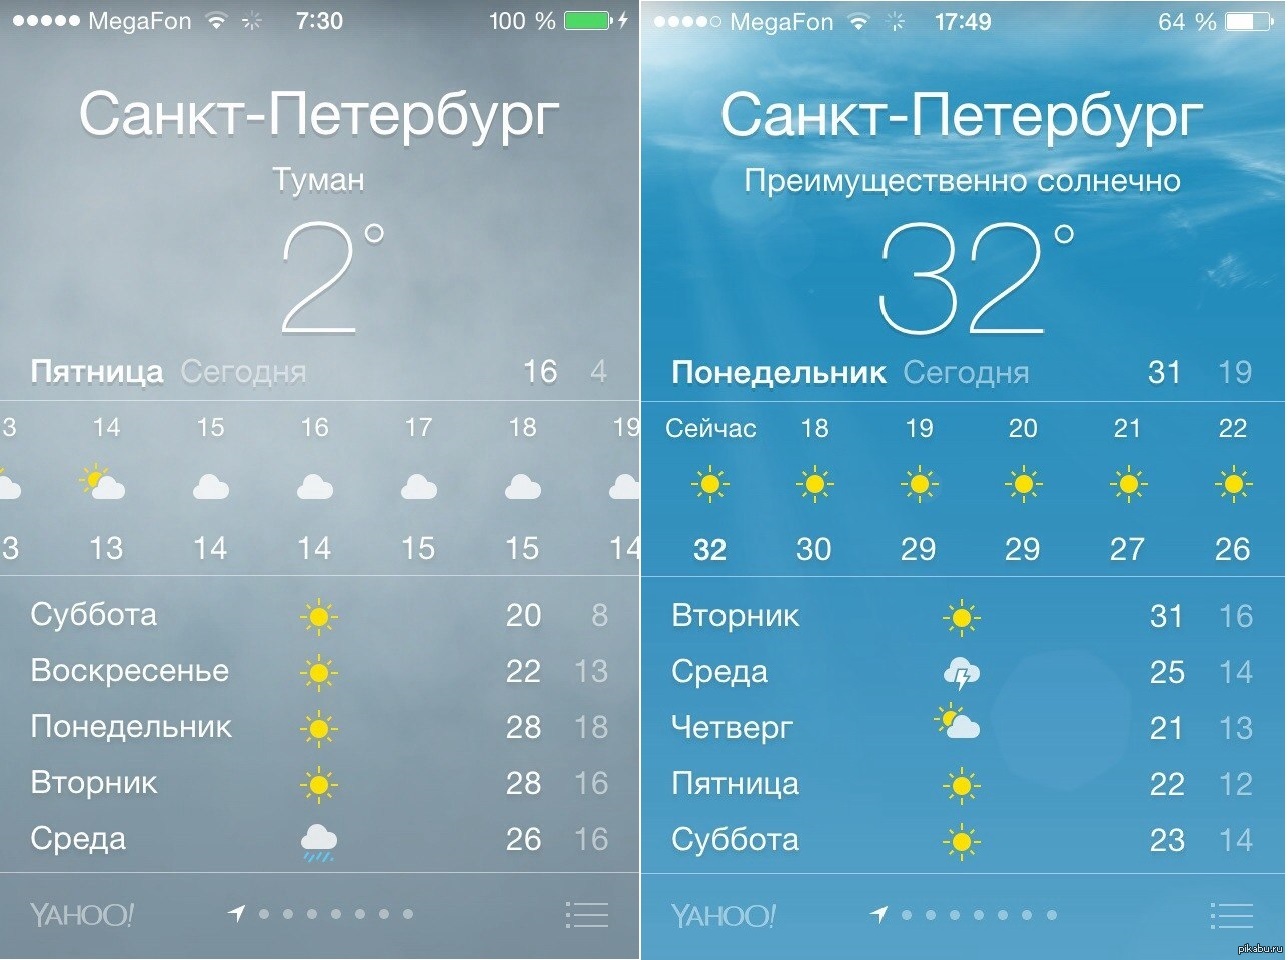 Https ya ru погода. Погода всанкитпетербурге. Погода в Санкт-петербургепе. Прогноз погоды в Санкт-Петербурге. Погода в Санкт-Петербурге на сегодня.